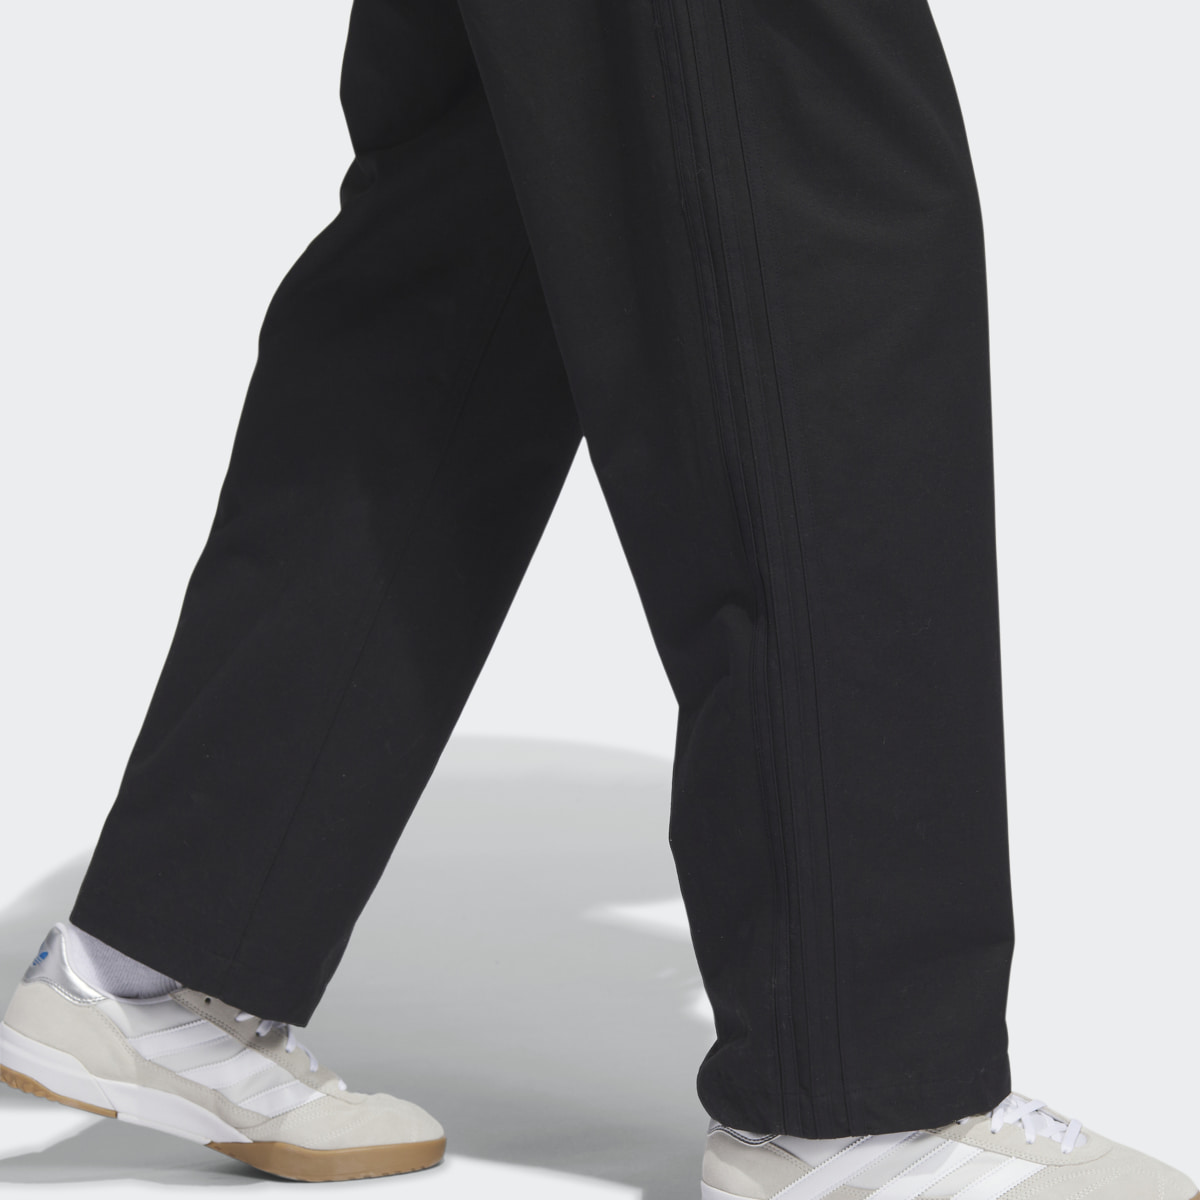 Adidas 3-Stripes Skate Chino Pants. 8